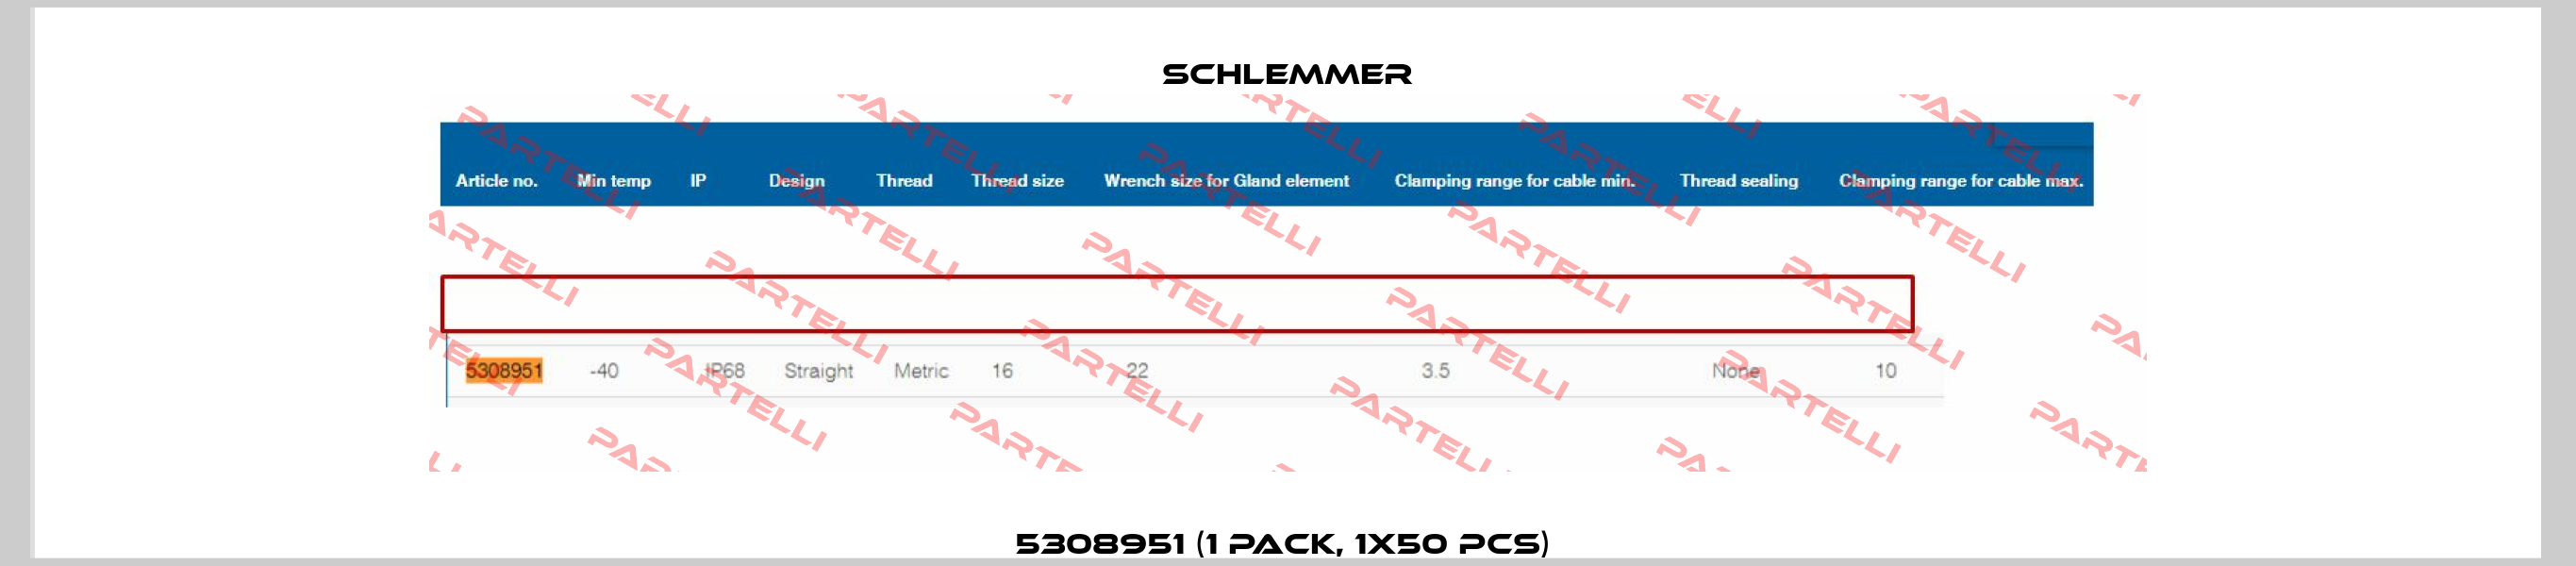 5308951 (1 pack, 1x50 pcs)  Schlemmer